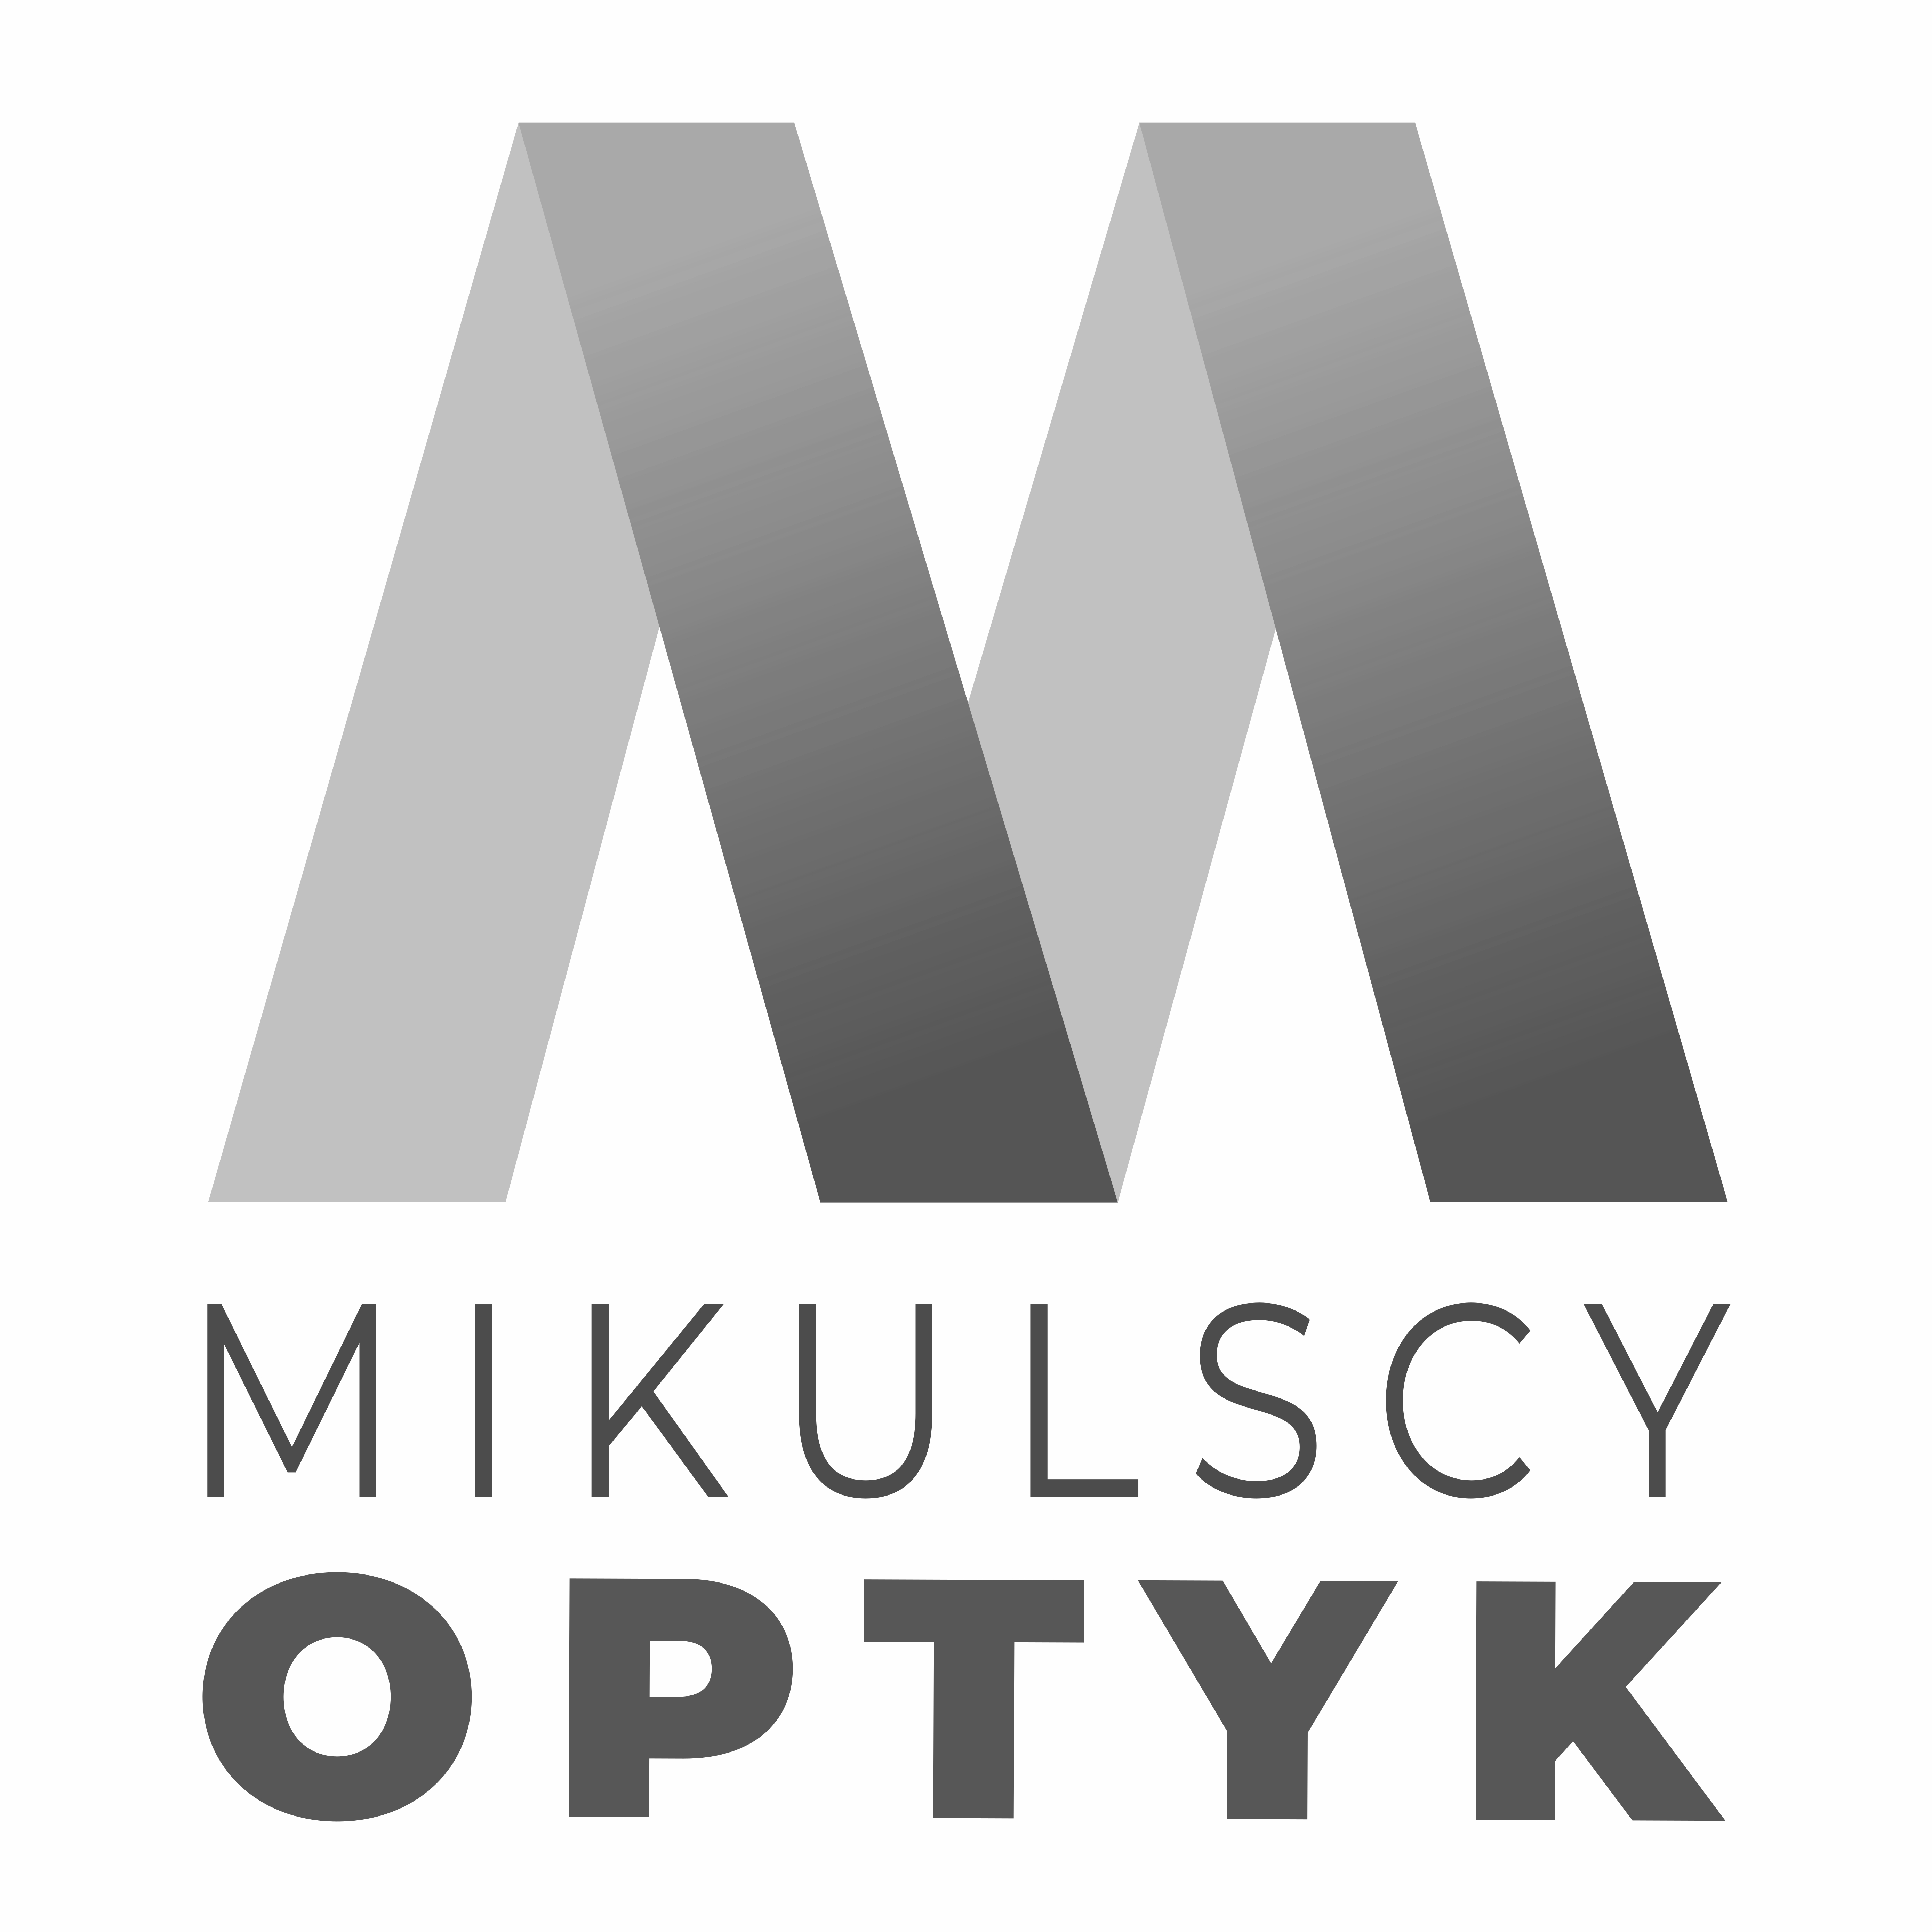 optykmikulscy_logo.jpg